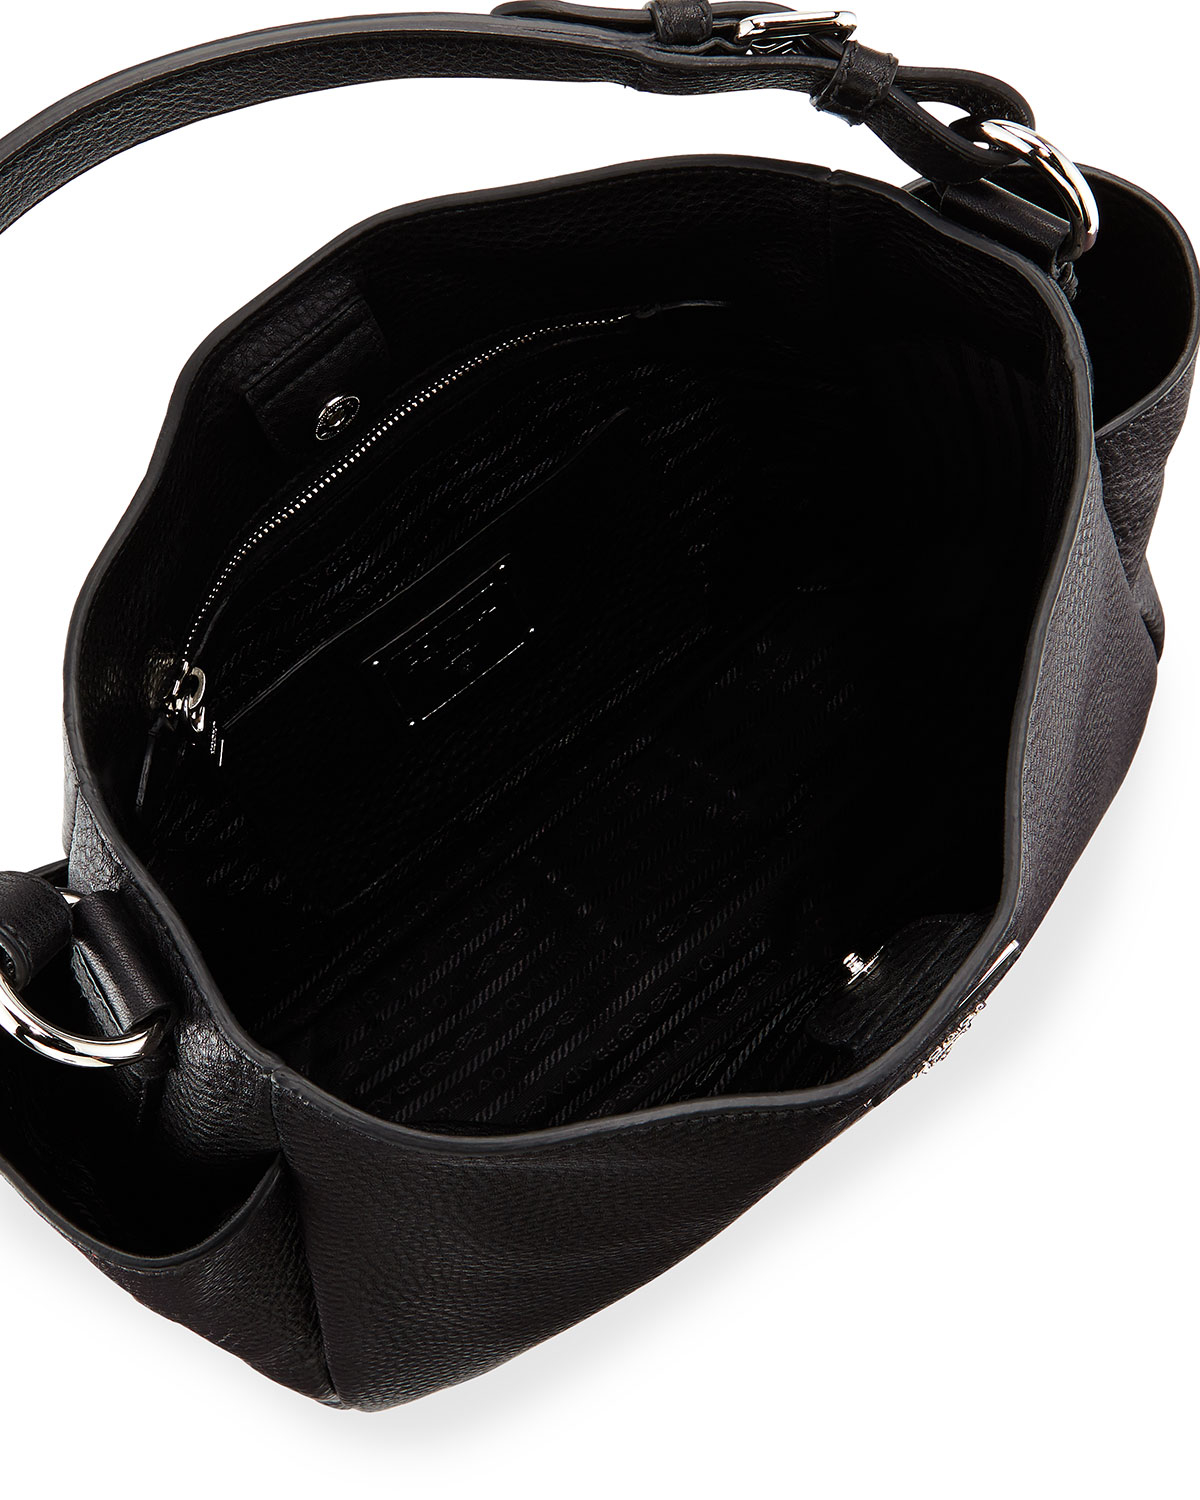 Prada Vitello Daino Single Strap Tote Bag in Black | Lyst